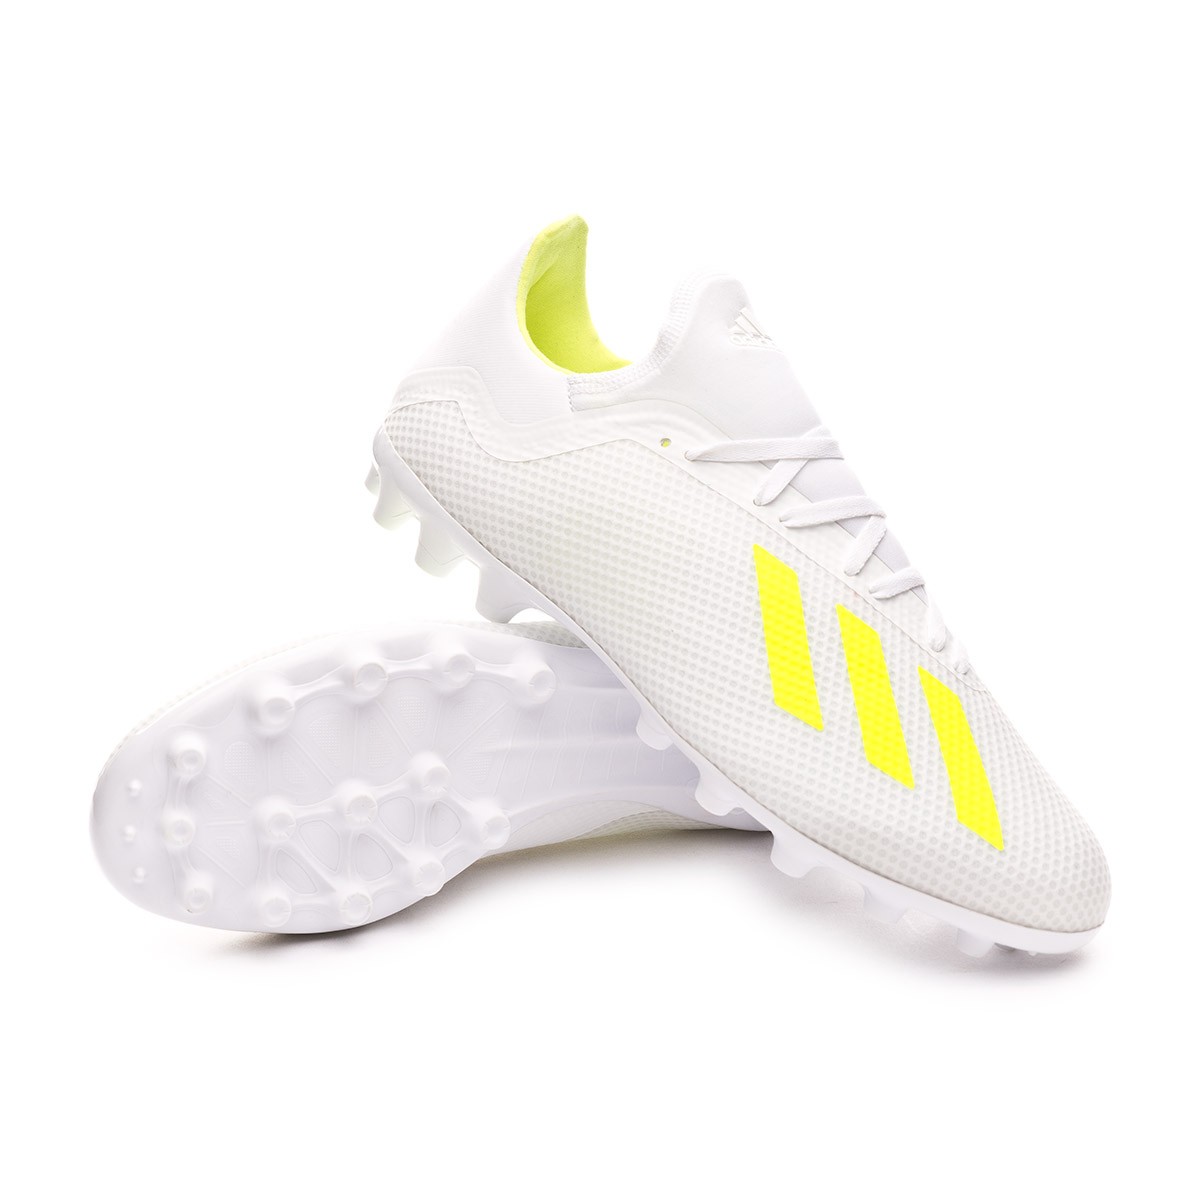 Football Boots adidas X 18.3 AG White-Solar yellow-White - Football store  Fútbol Emotion